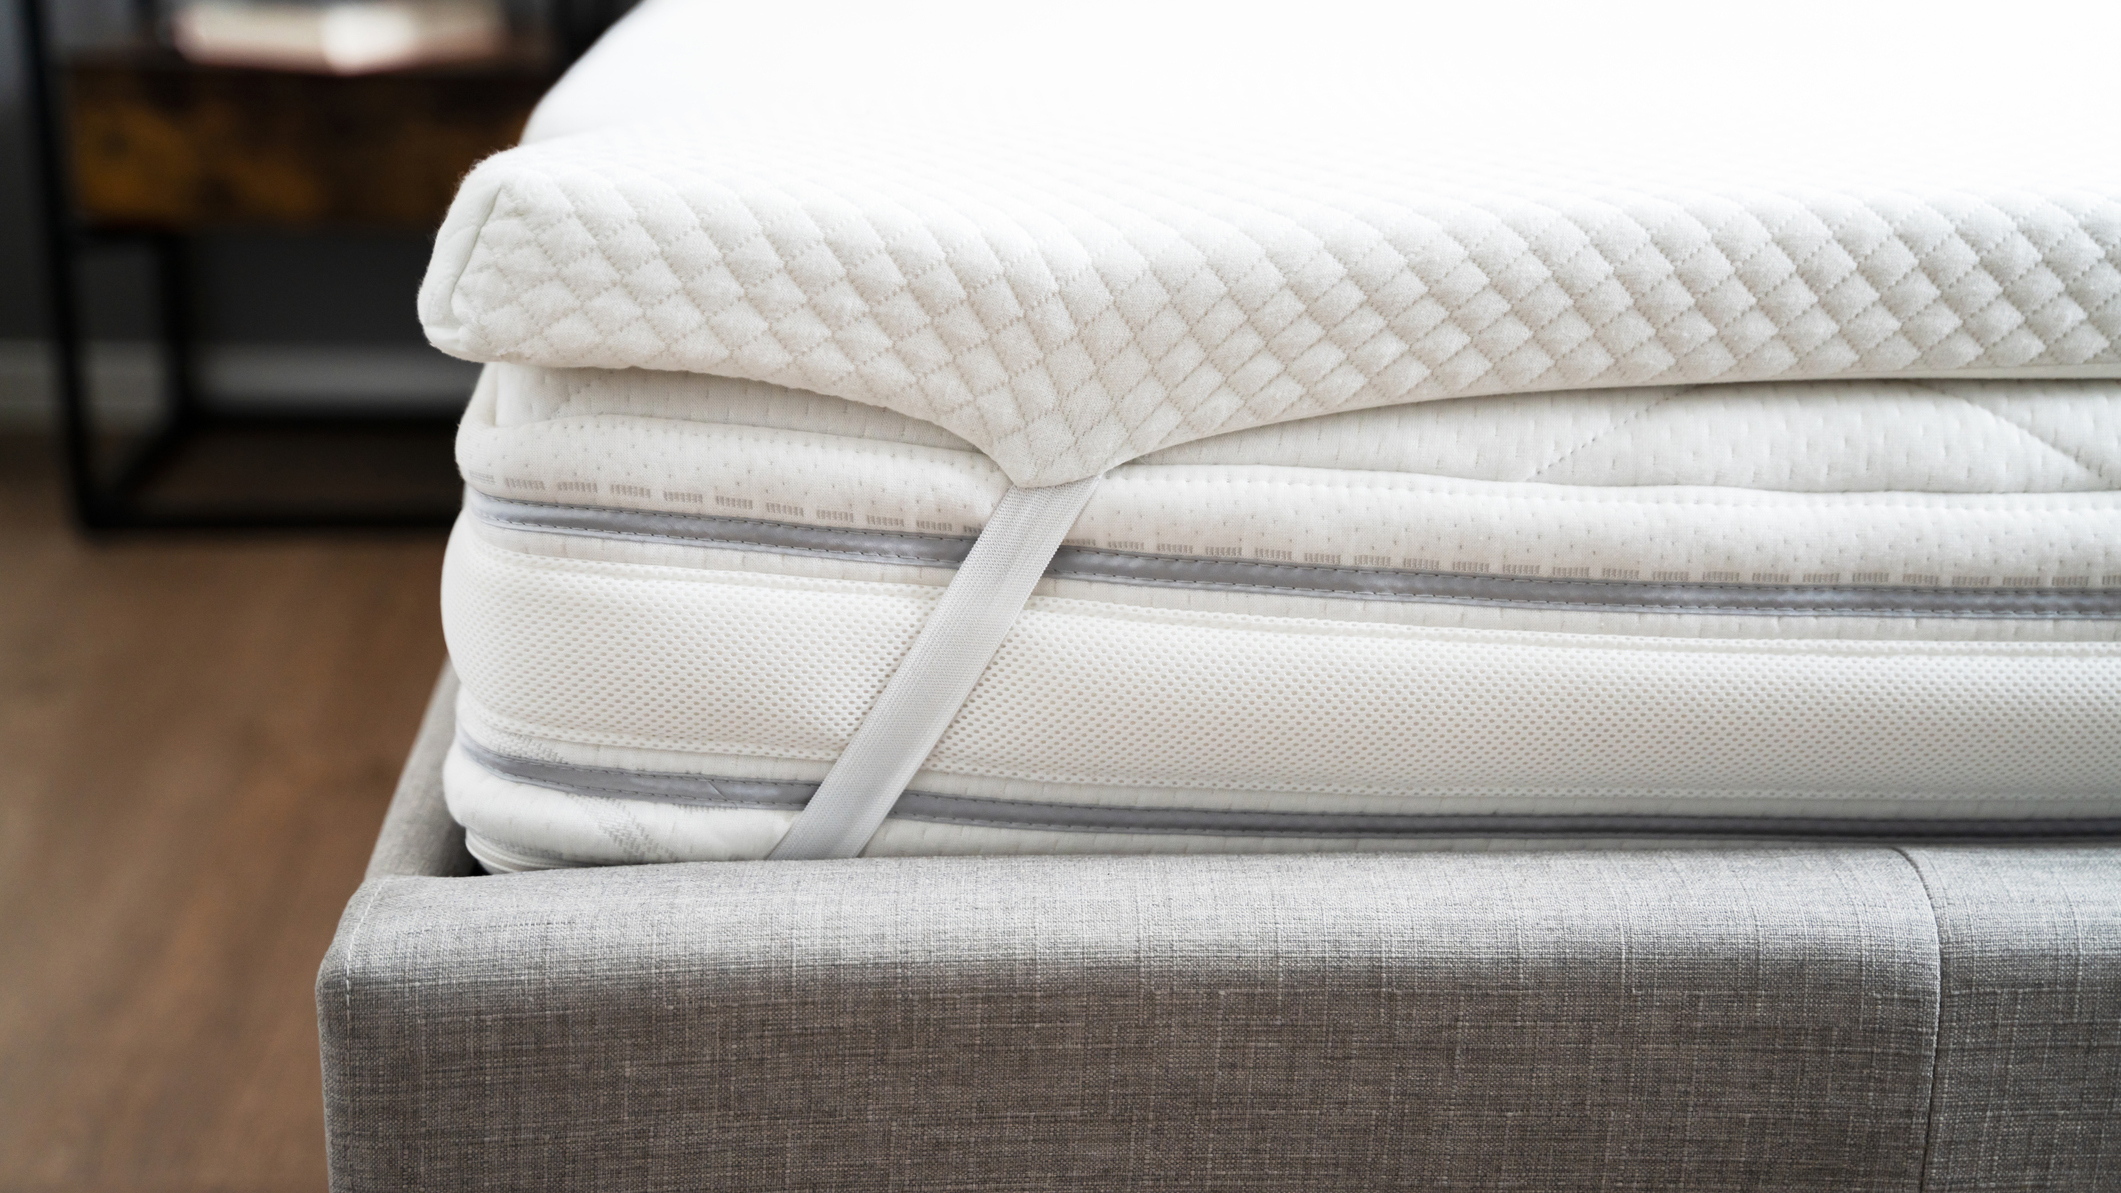 Gambar menunjukkan kasur busa memori di dasar tempat tidur kain abu-abu dan dengan penutup